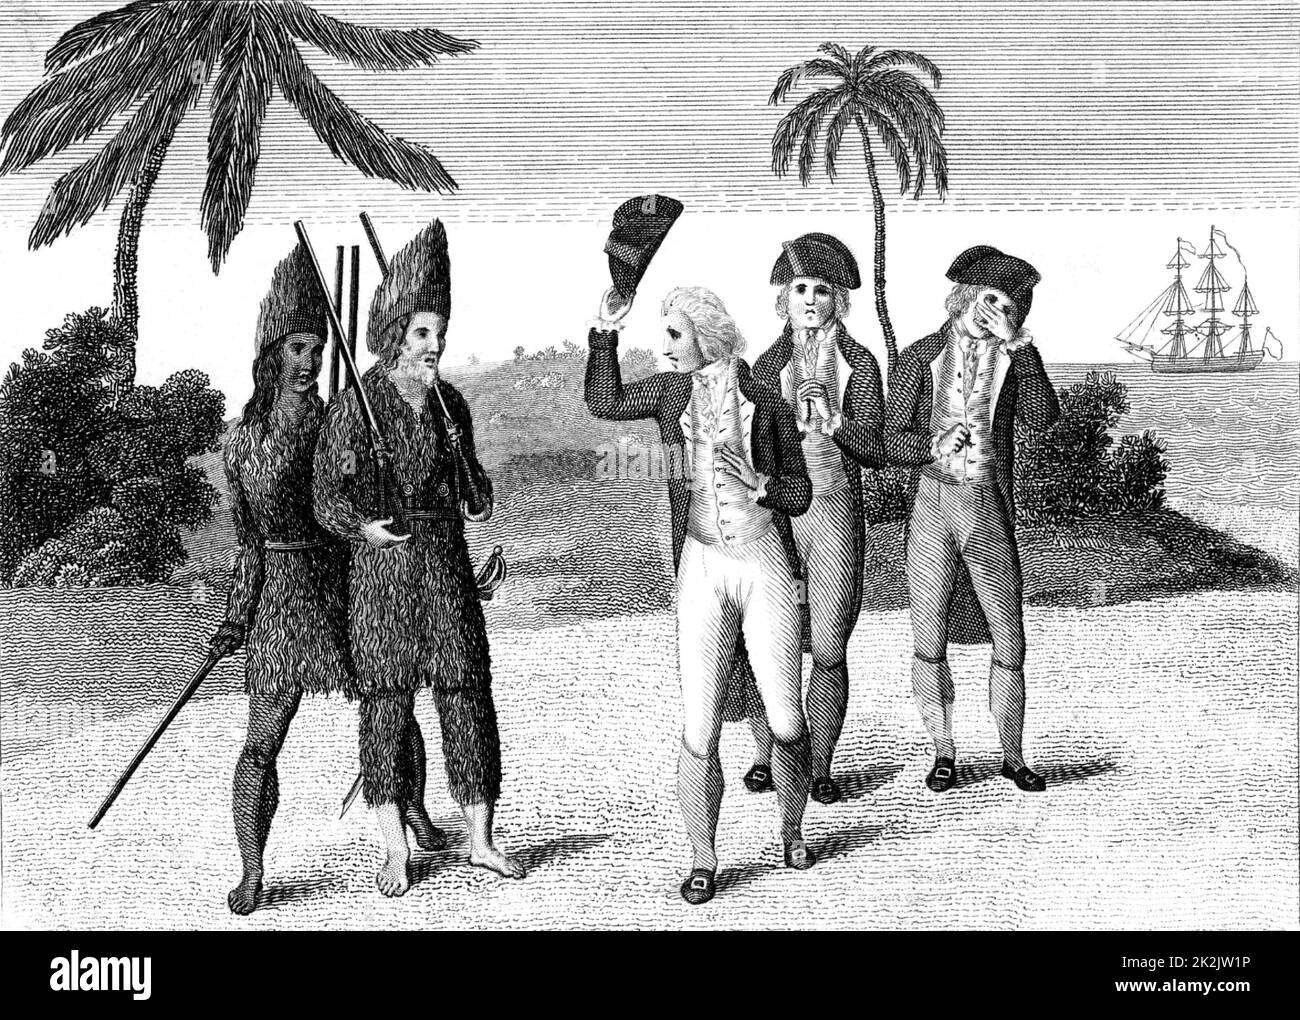 Robinson Crusoé et son compagnon vendredi, à gauche, avec le capitaine anglais qu'il a aidé à mater la mutinerie à bord de son navire. Après 28 ans sur son île, Robinson rejoint le navire et de voiles pour la maison. 'La vie et l'étrange et aventures surprenantes de Robinson Crusoé" de Daniel Defoe publié pour la première fois 1719, basée en partie sur les expériences de 1704-1709 Alexander Selkirk et réclamé par certains pour être premier roman anglais. De Gravure edition c1790. Banque D'Images